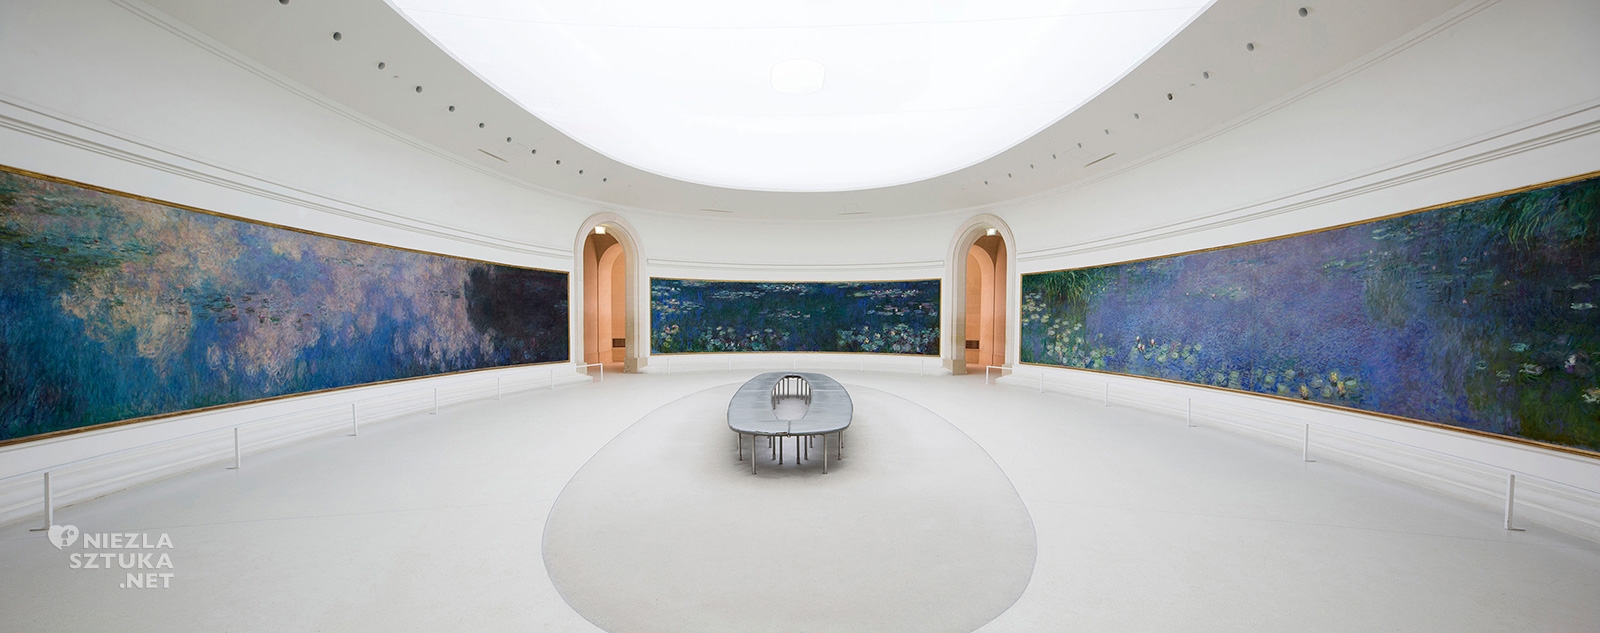 Claude Monet, Grandes Decorations, Musée de l'Orangerie, niezła sztuka